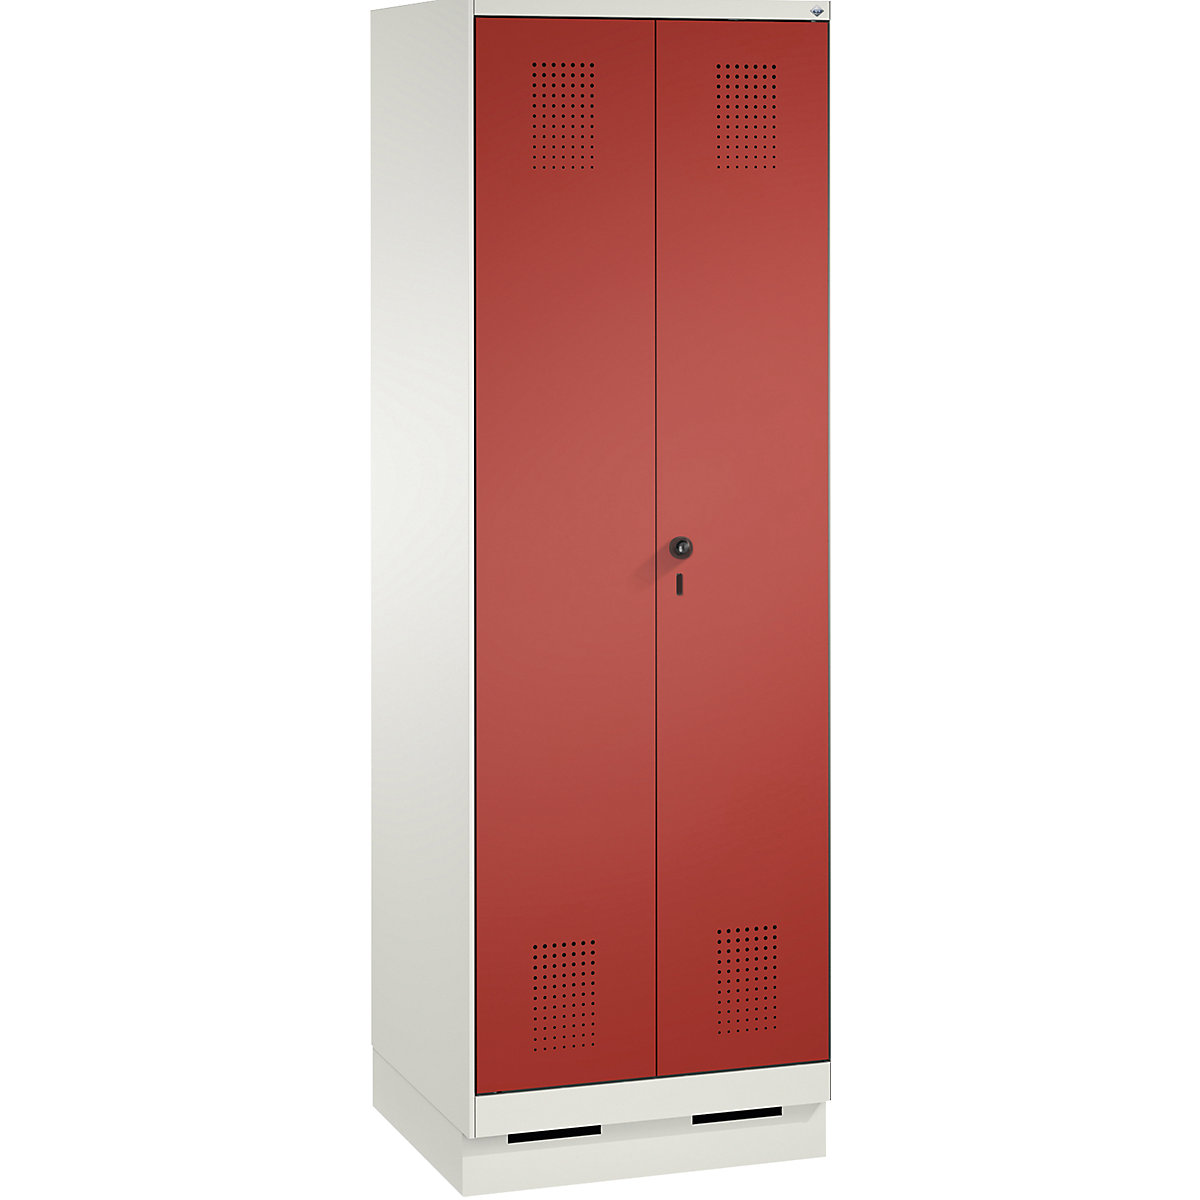 Úklidová/přístrojová skříň EVOLO – C+P, zkrácená dělicí stěna, 6 háků, oddíly 2 x 300 mm, se soklem, dopravní bílá / ohnivě červená-5